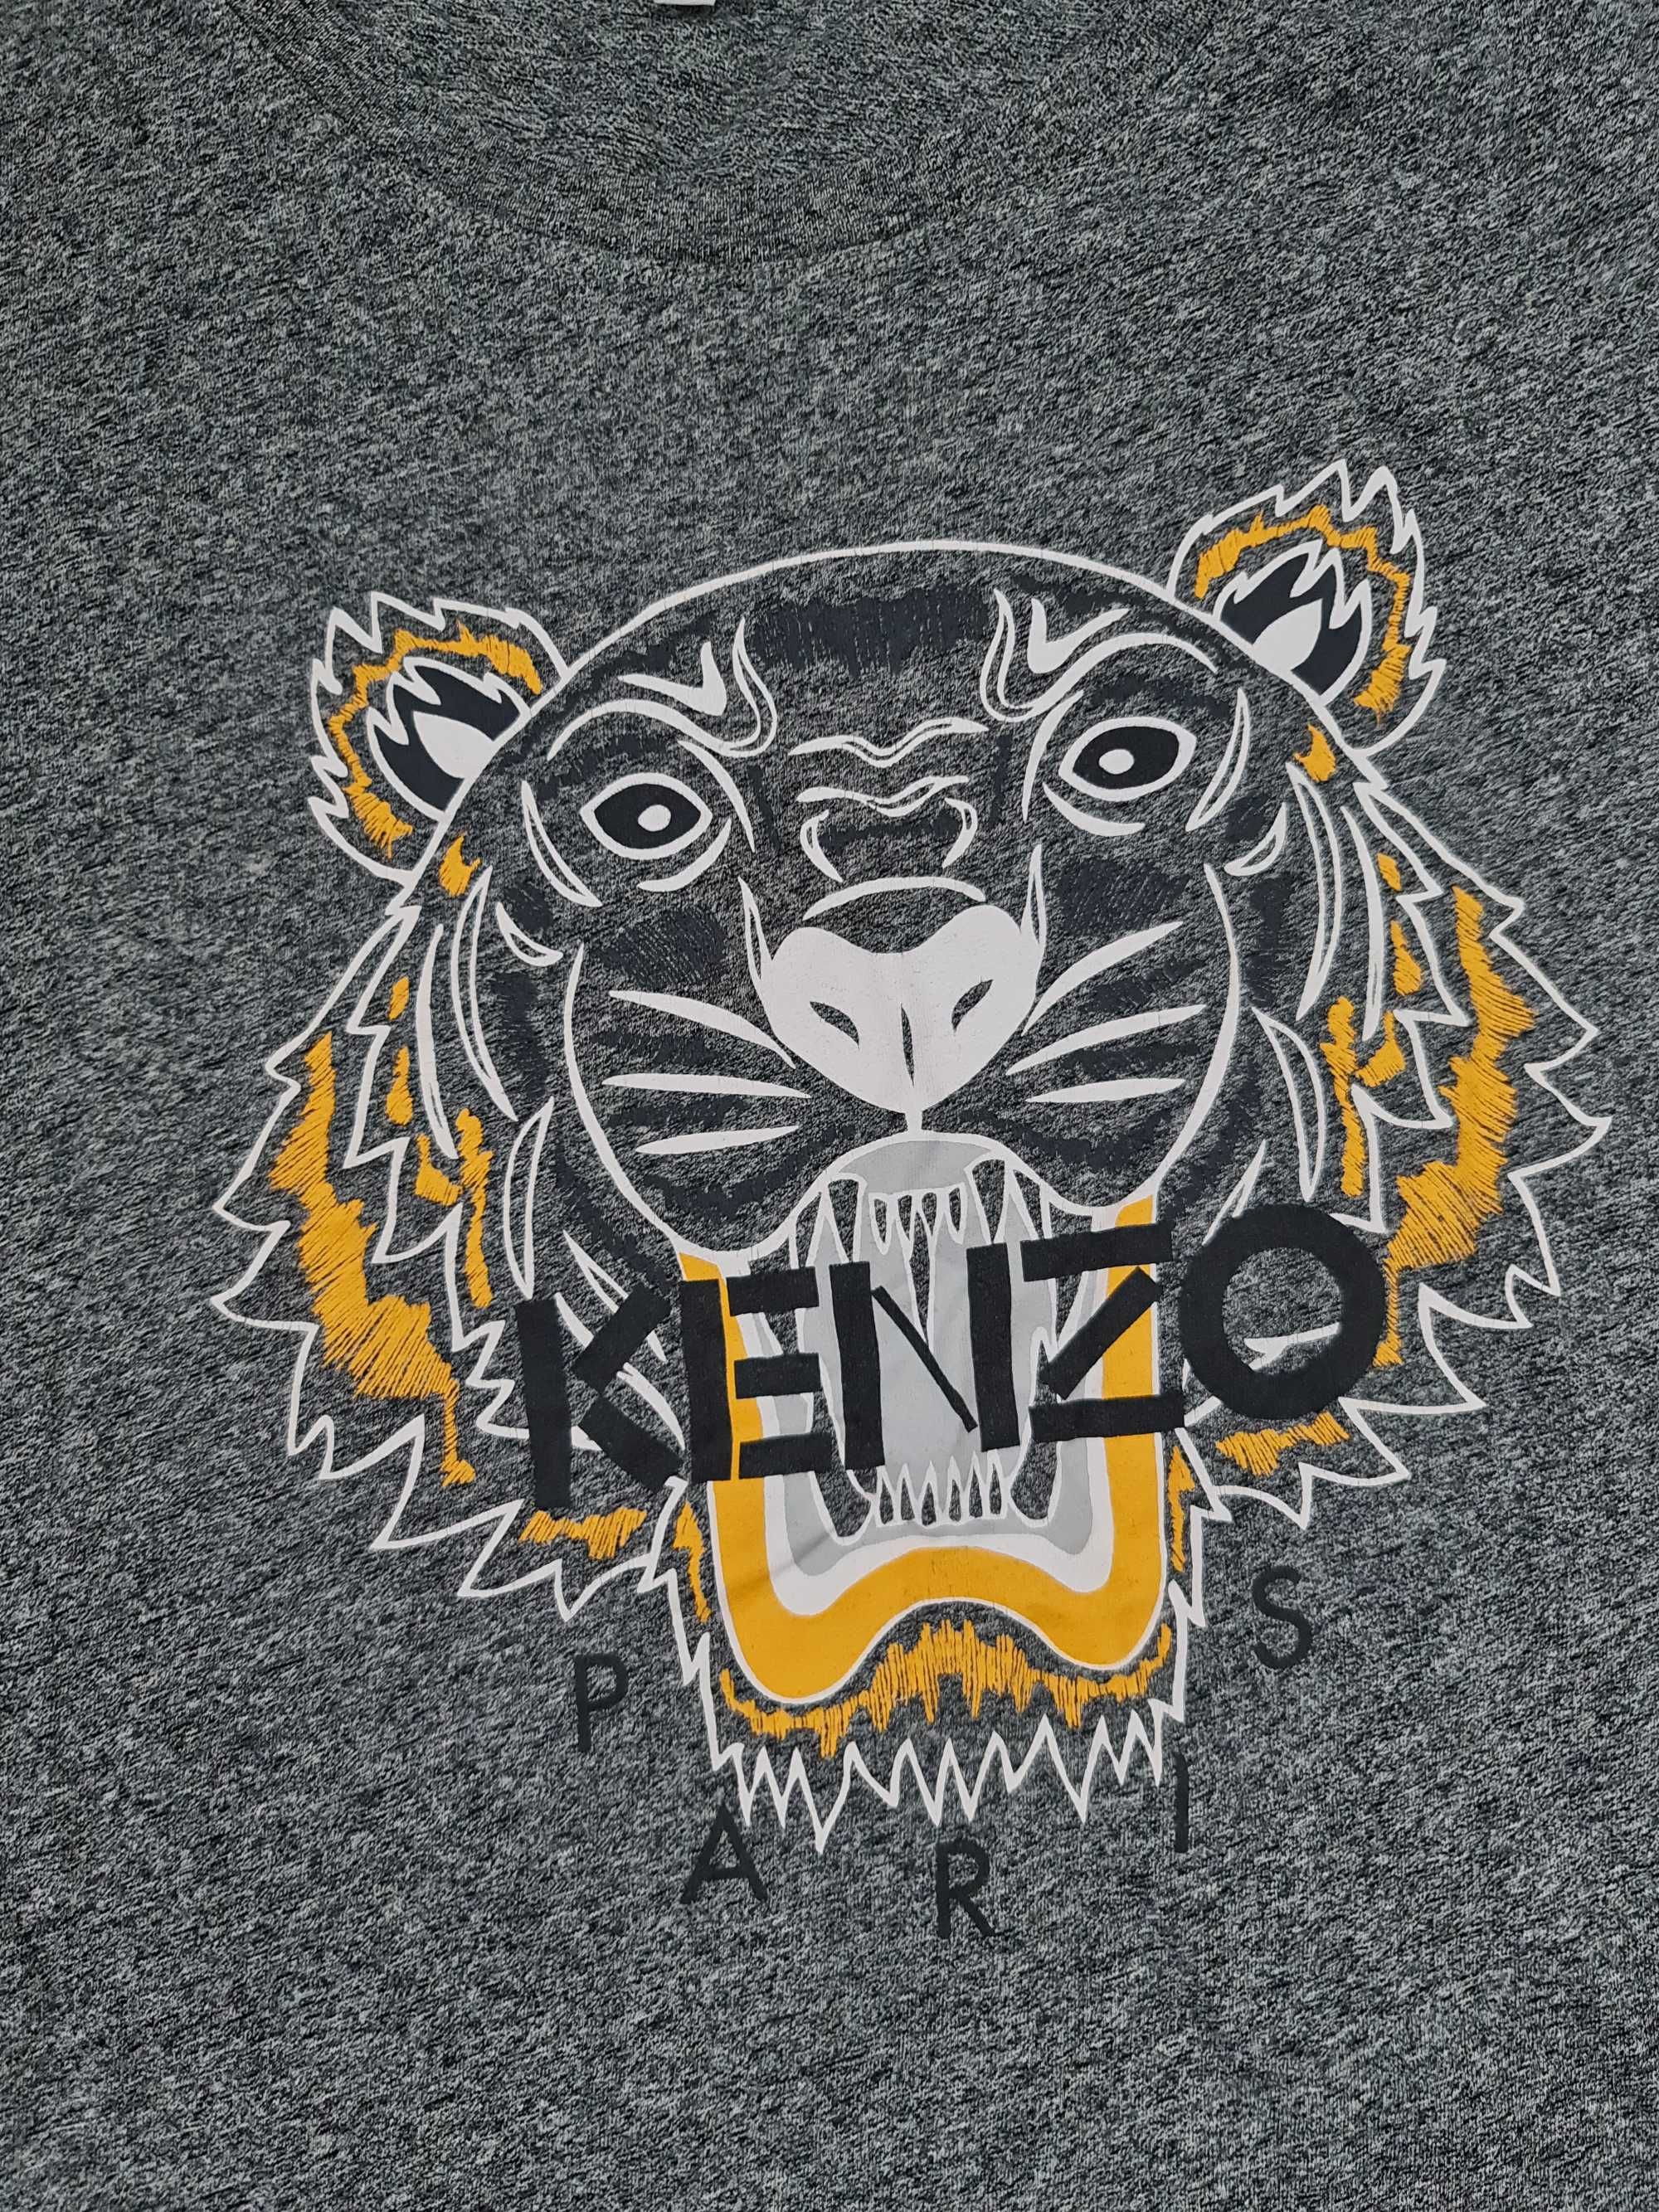 Koszulka T-shirt Kenzo Rozmiar S Duże Logo Szara Tygrys Oryginalna